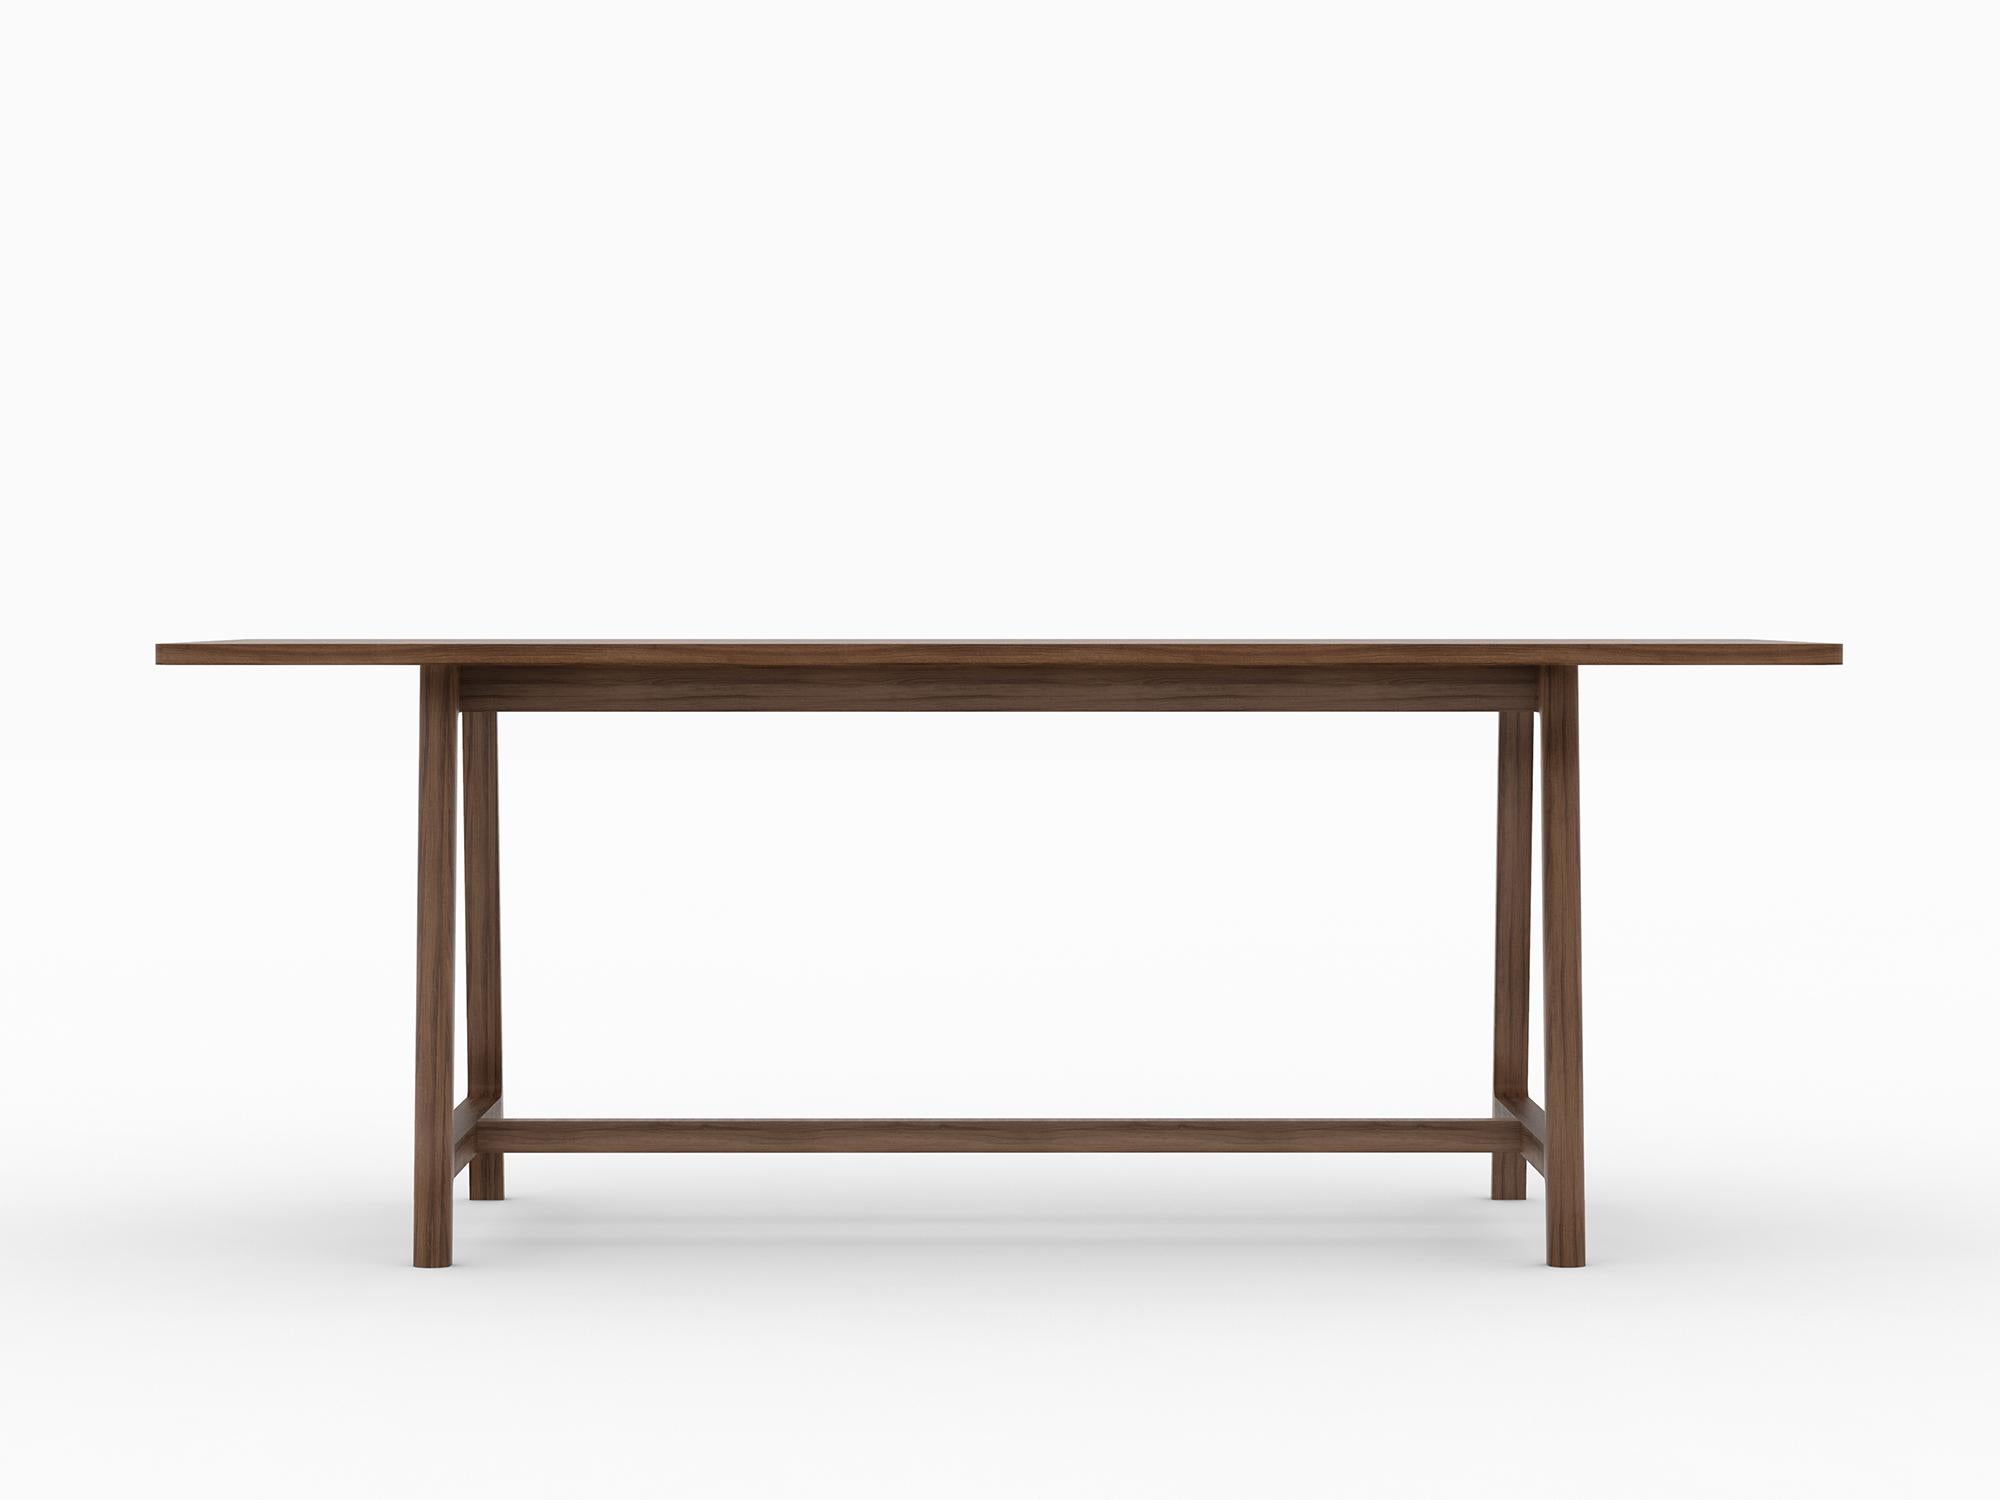 La collection Frame est le trio parfait pour tout espace de rassemblement. La collection comprend une table, une chaise et un banc, contenant tout ce dont on a besoin pour se réunir confortablement.

Avec un design simple mais sculptural et qui